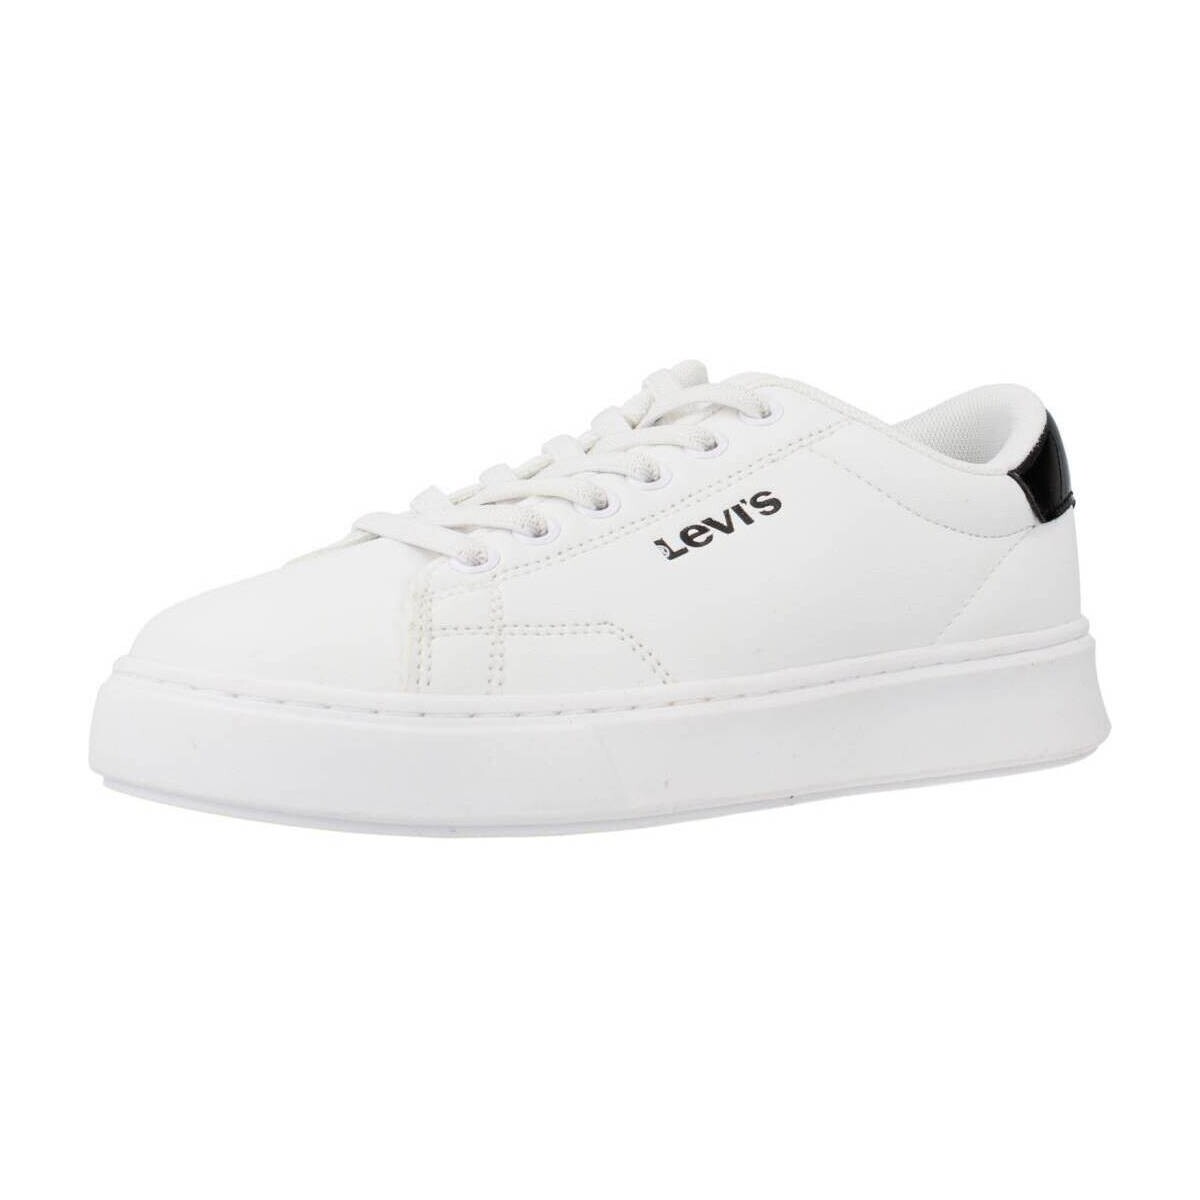 Παπούτσια Αγόρι Χαμηλά Sneakers Levi's AMBER Άσπρο